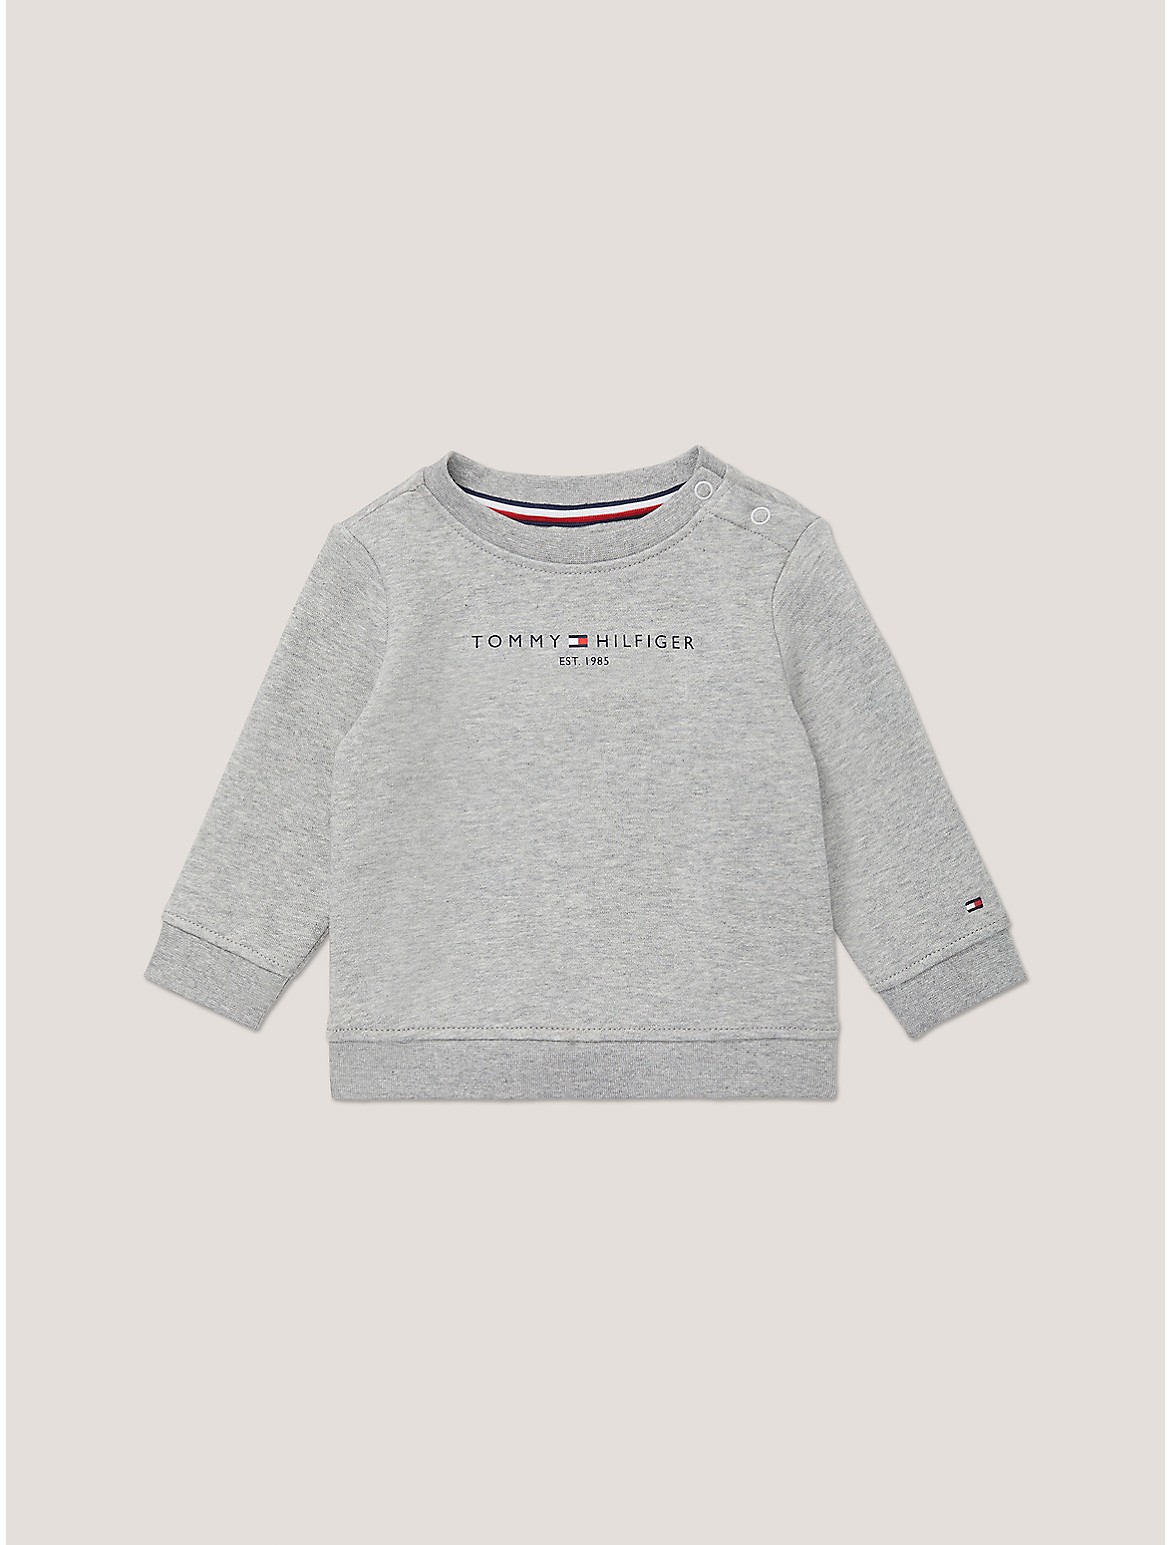 Tommy Hilfiger Boys' Babies' Tommy Logo Sweatshirt